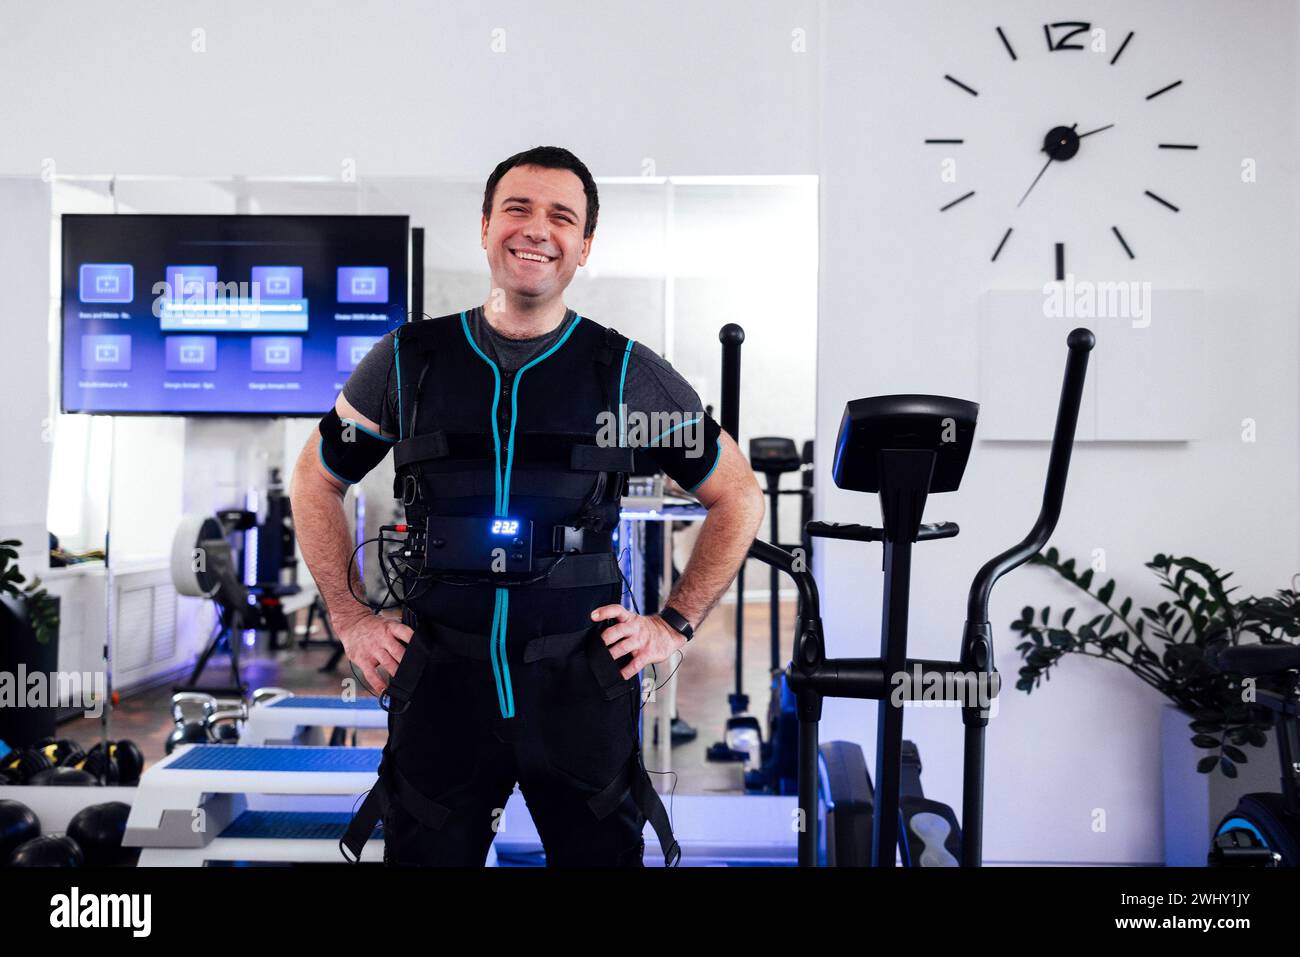 Portrait de l'homme souriant satisfait en costume spécial ems debout au milieu de la salle de gym ou club de fitness. Banque D'Images